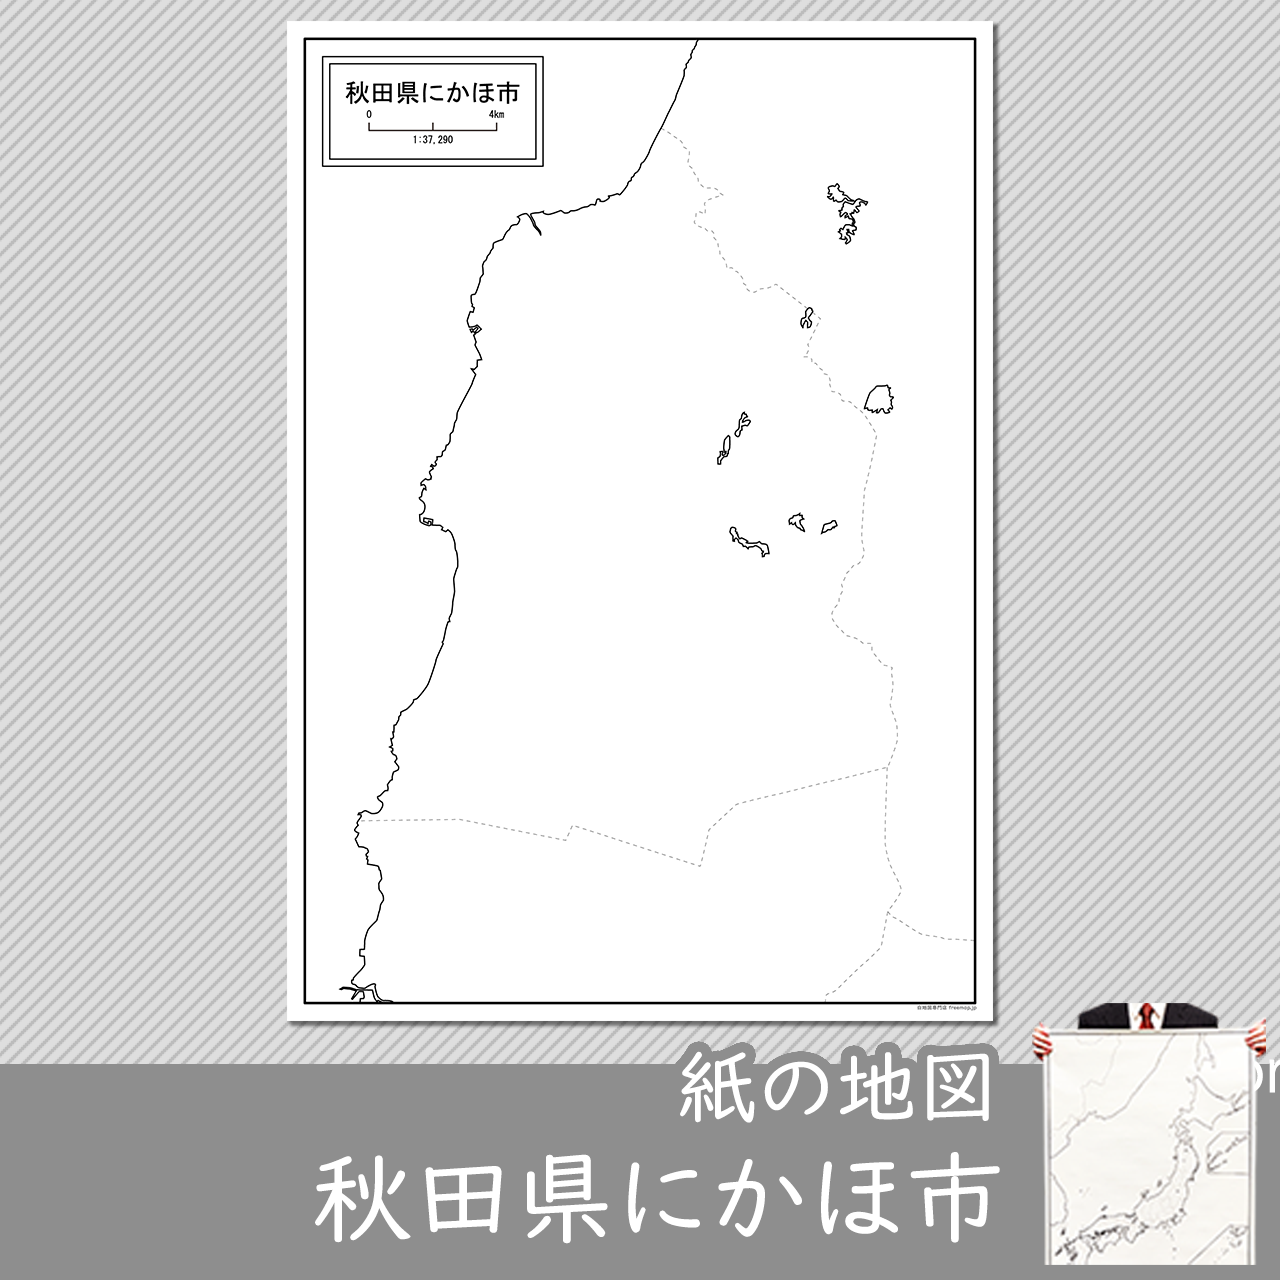 にかほ市の紙の白地図のサムネイル